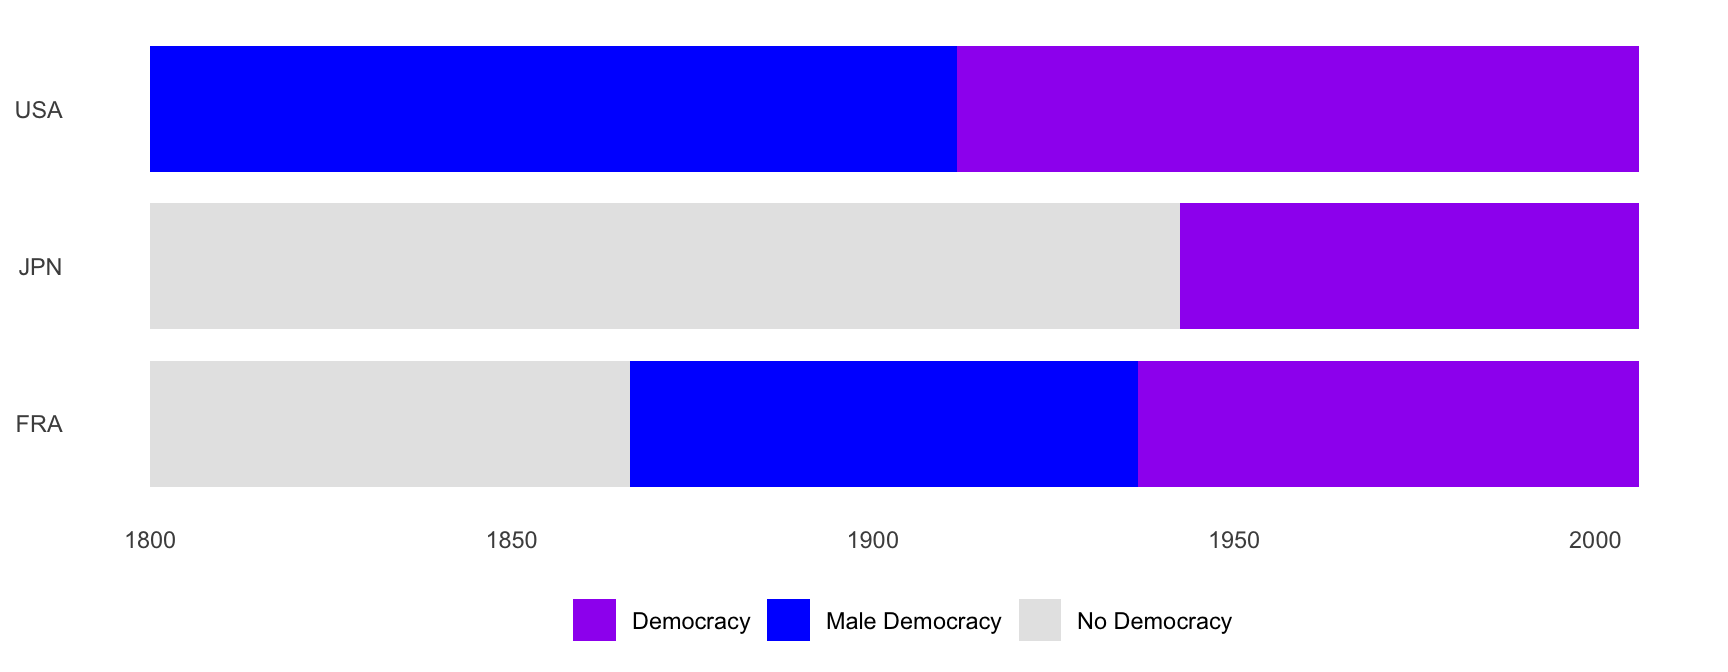 Democràcia i sufragi femení a França, Japó i Estats Units